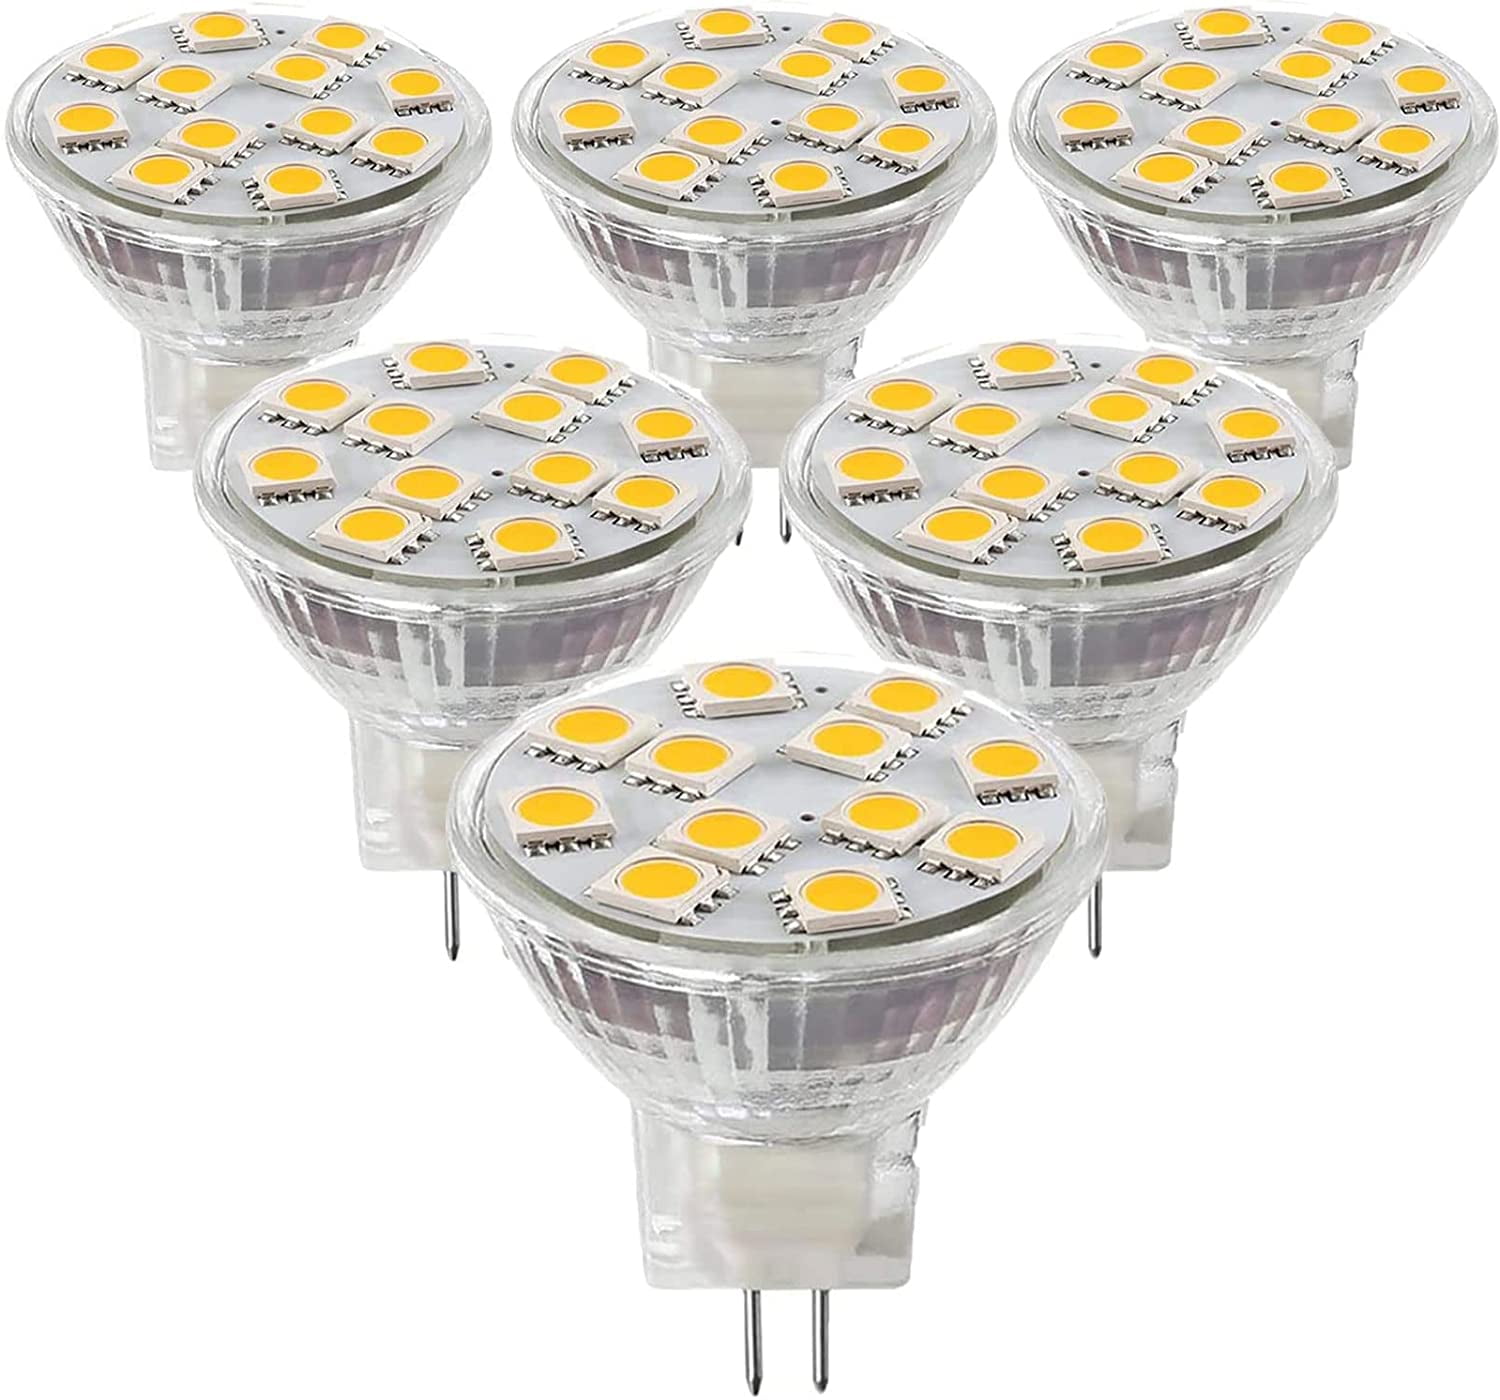 bede Elektrisk Tidligere MR11 GU4 LED Light Bulbs GU4 Bi-Pin Base AC12V 2W (20W Halogen Light Bulbs)  Warm White 3000K Utral Bright Spotlight for Home Landscape Track  Lighting,Pack of 6 - Walmart.com